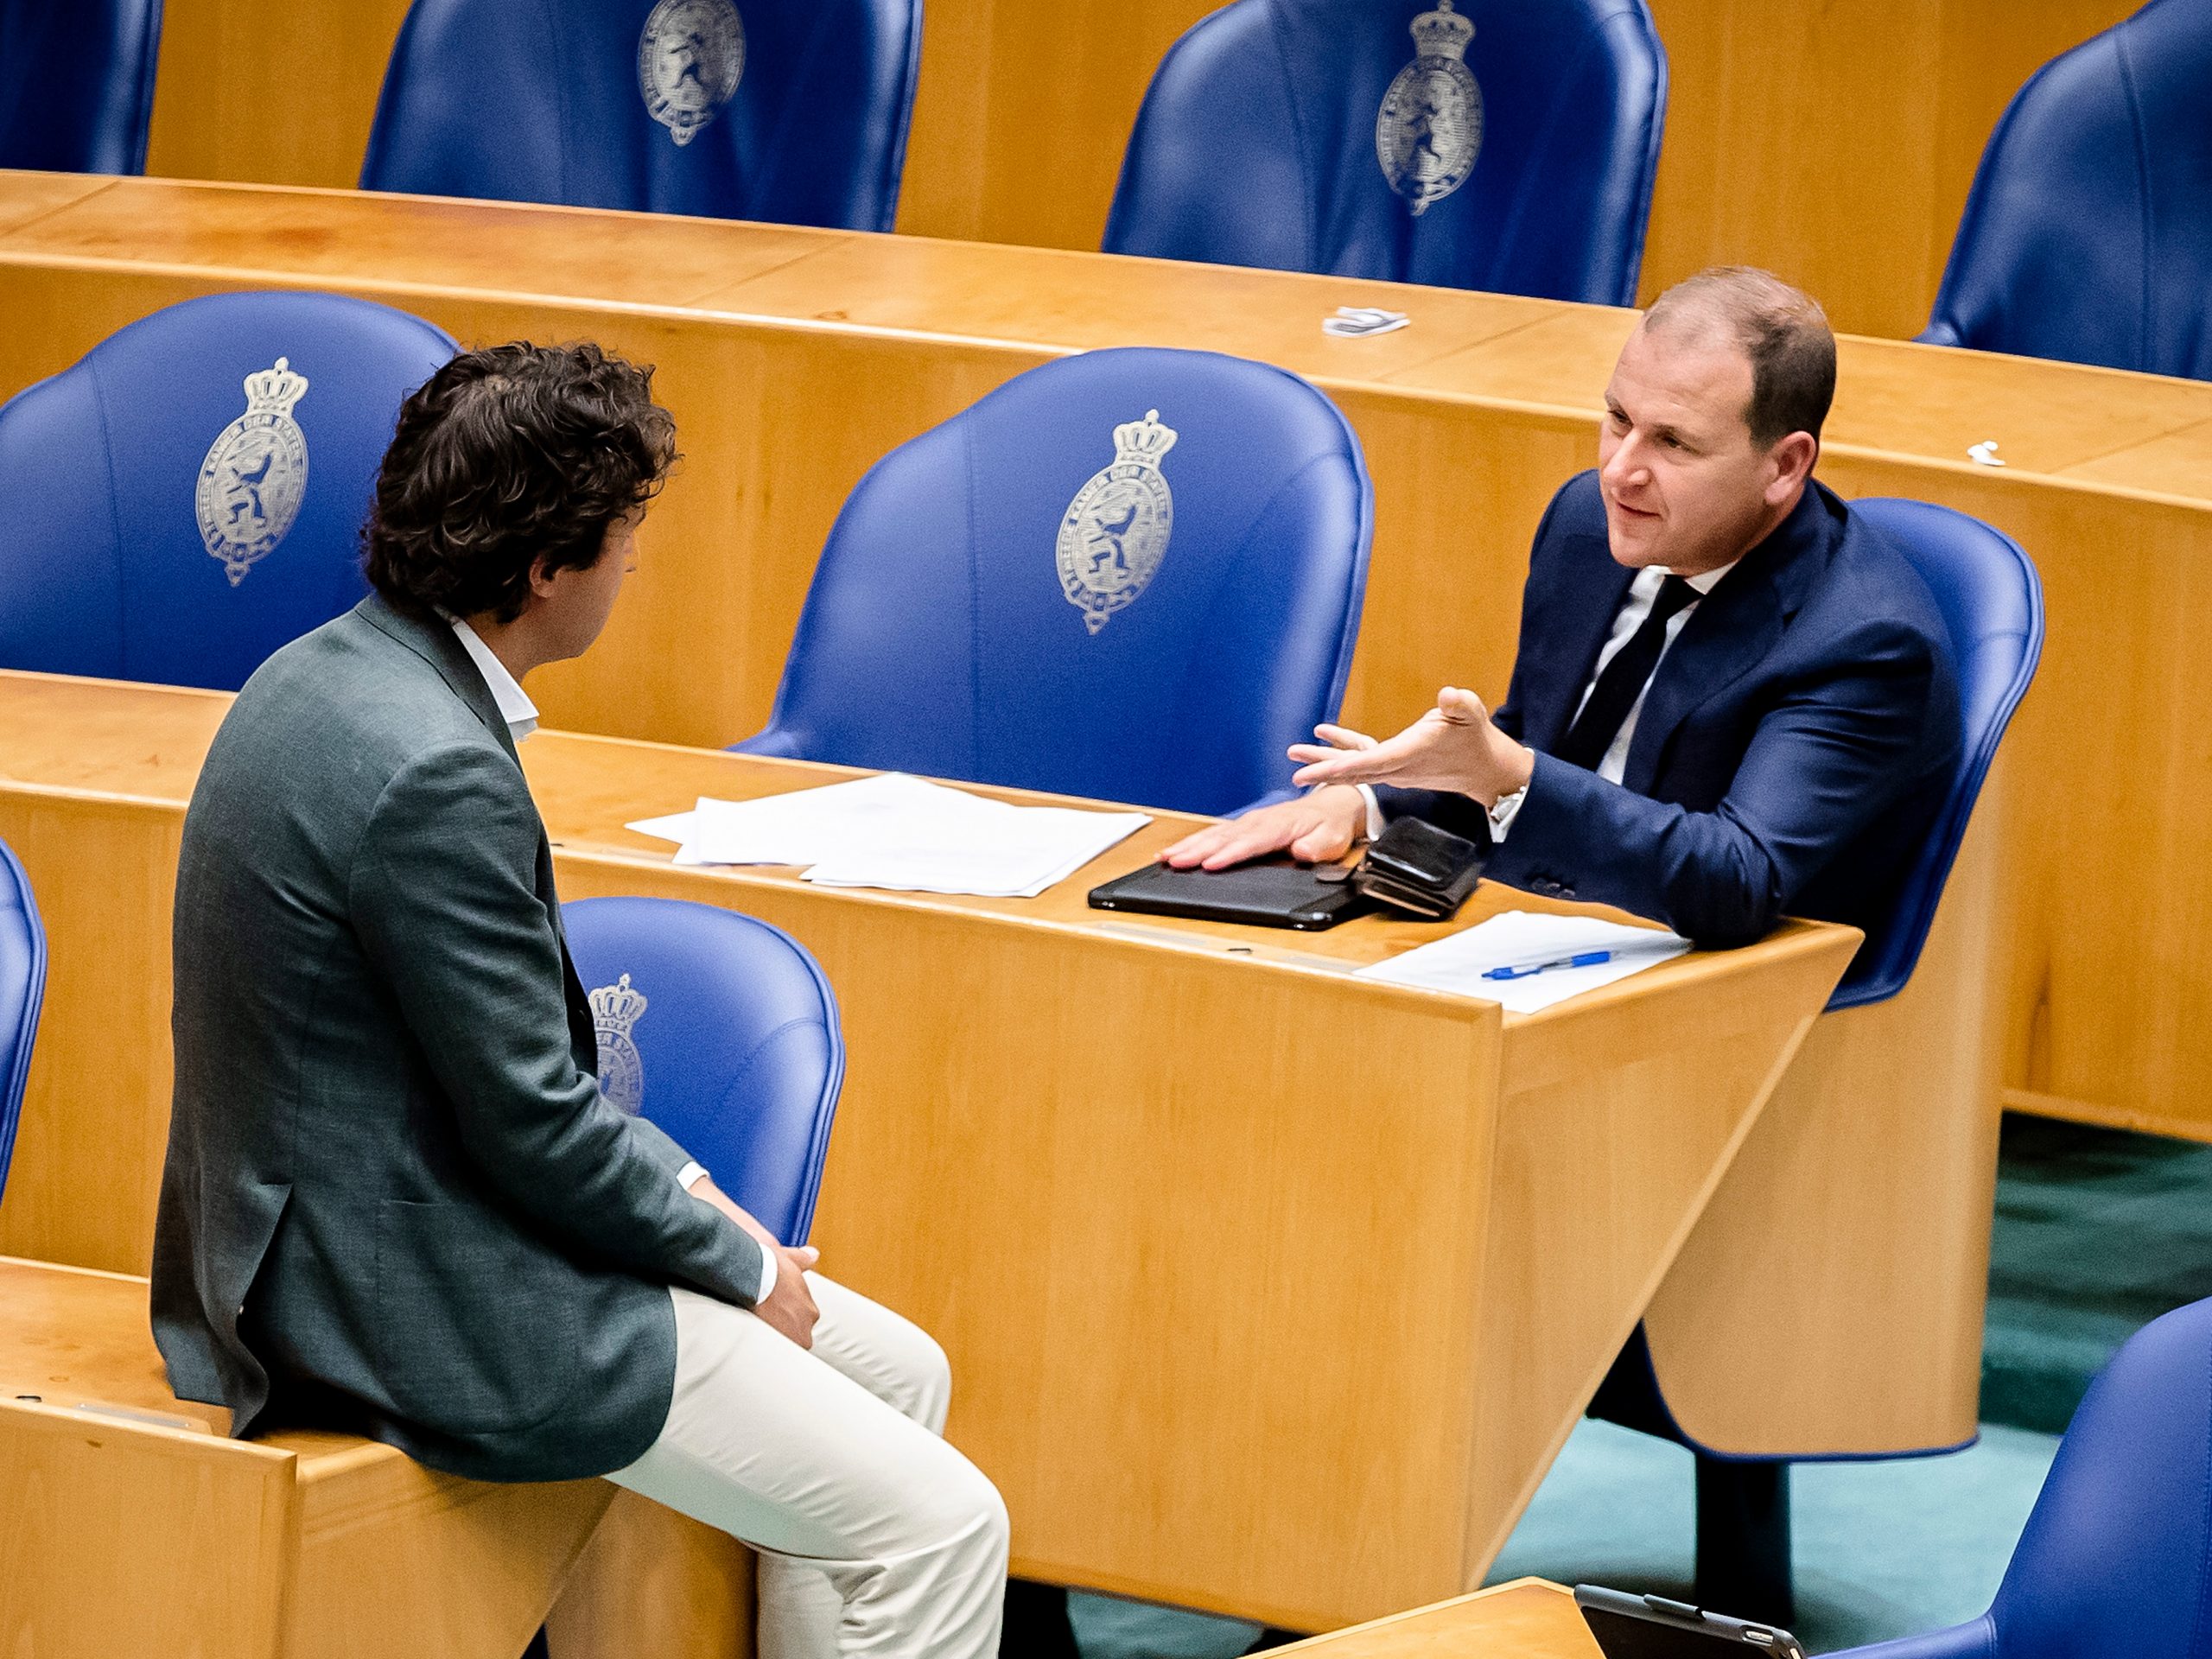 Jesse Klaver (GroenLinks) en Lodewijk Asscher (PvdA) tijdens een schorsing van een plenair debat over de ontwikkelingen rondom het coronavirus.